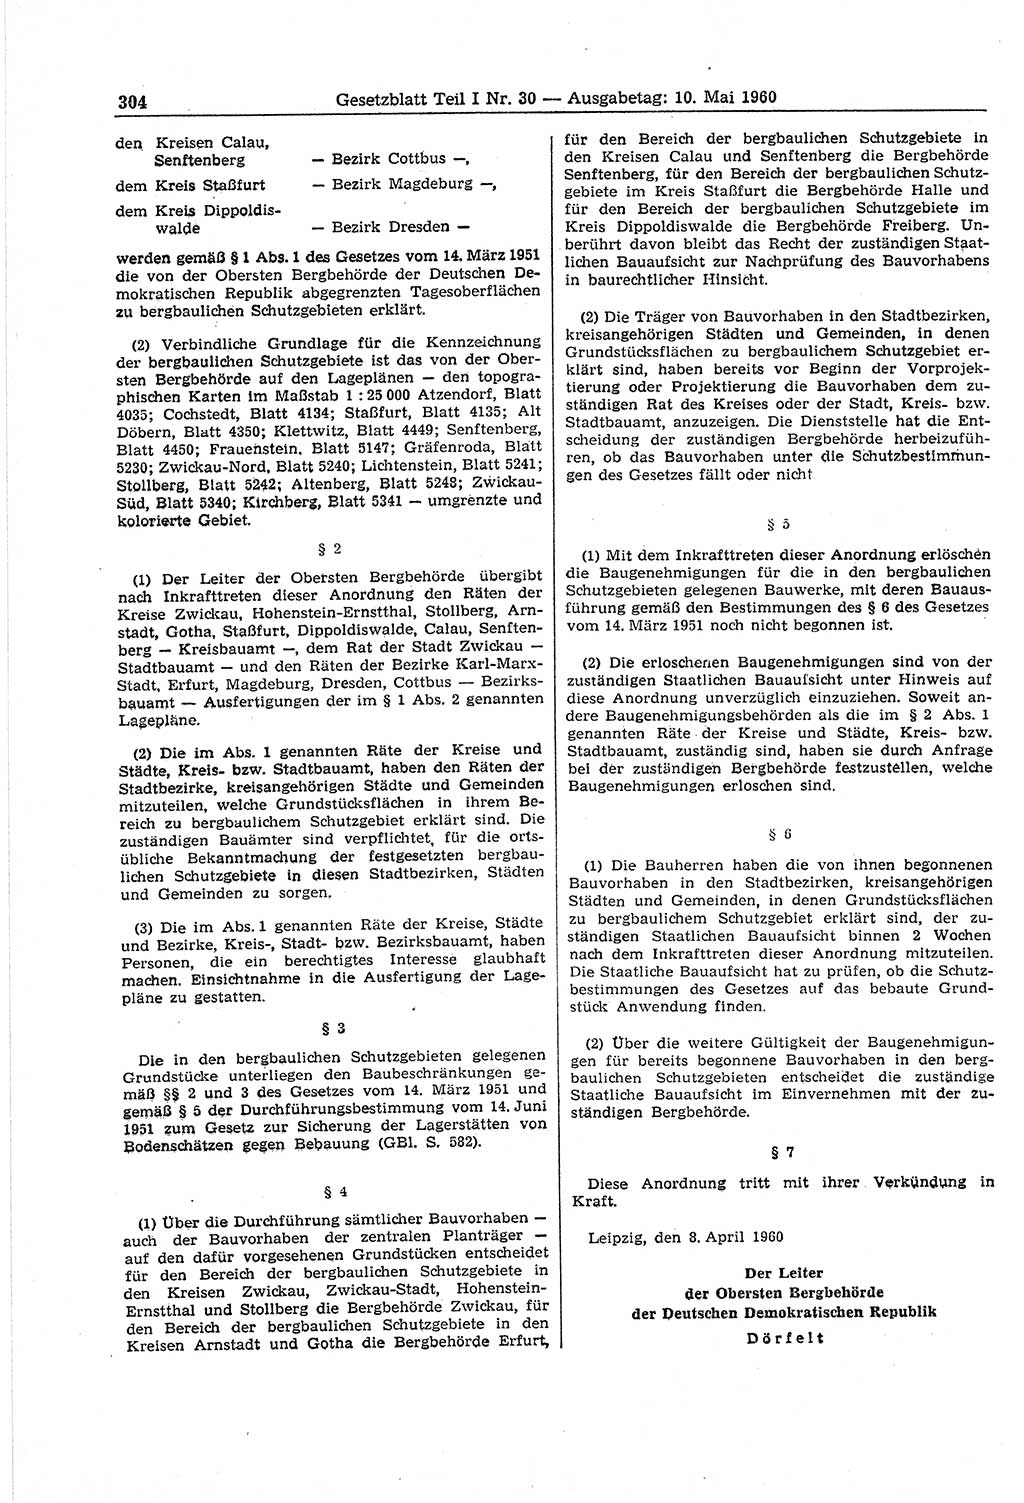 Gesetzblatt (GBl.) der Deutschen Demokratischen Republik (DDR) Teil Ⅰ 1960, Seite 304 (GBl. DDR Ⅰ 1960, S. 304)